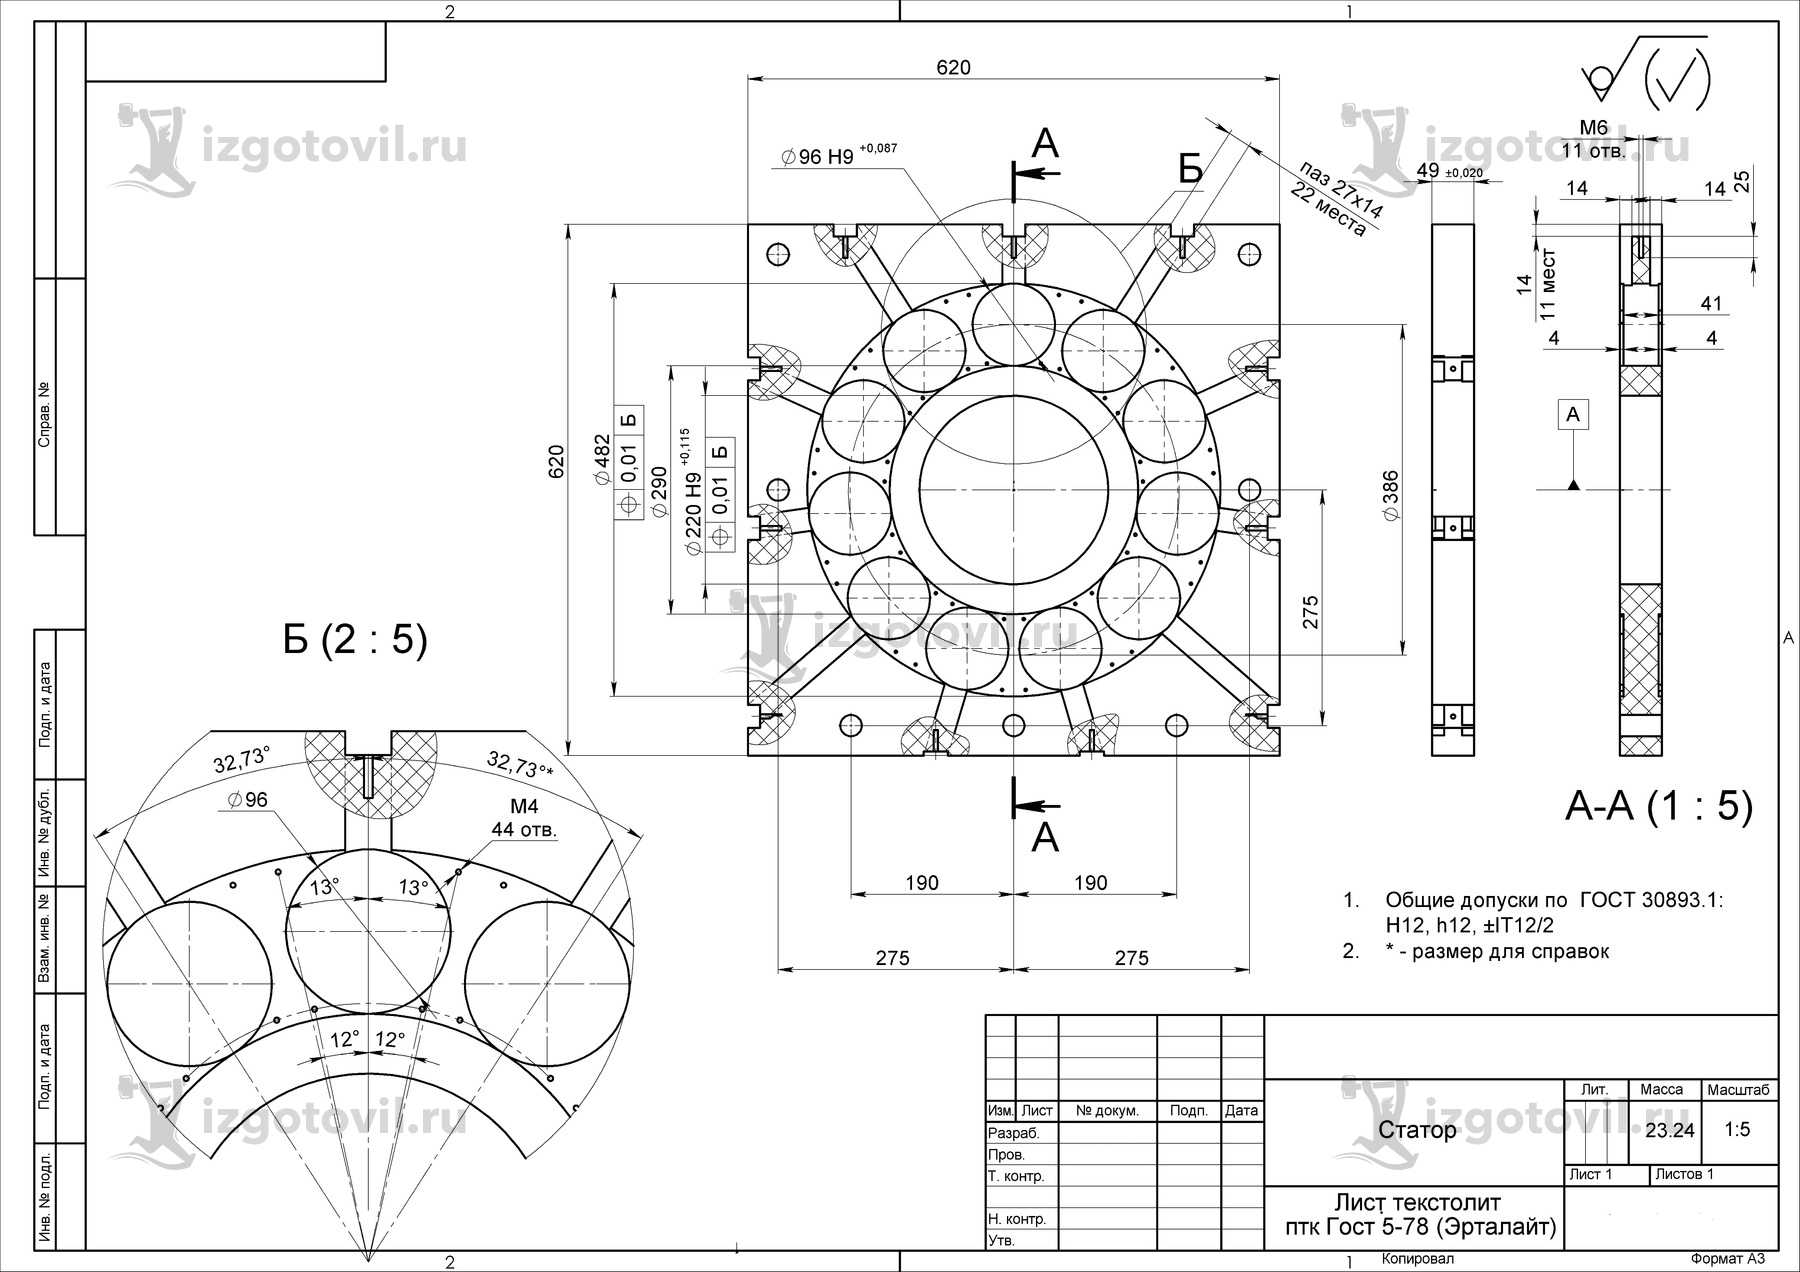 Токарно-фрезерная обработка: изготовление ступицы, ротора и статора